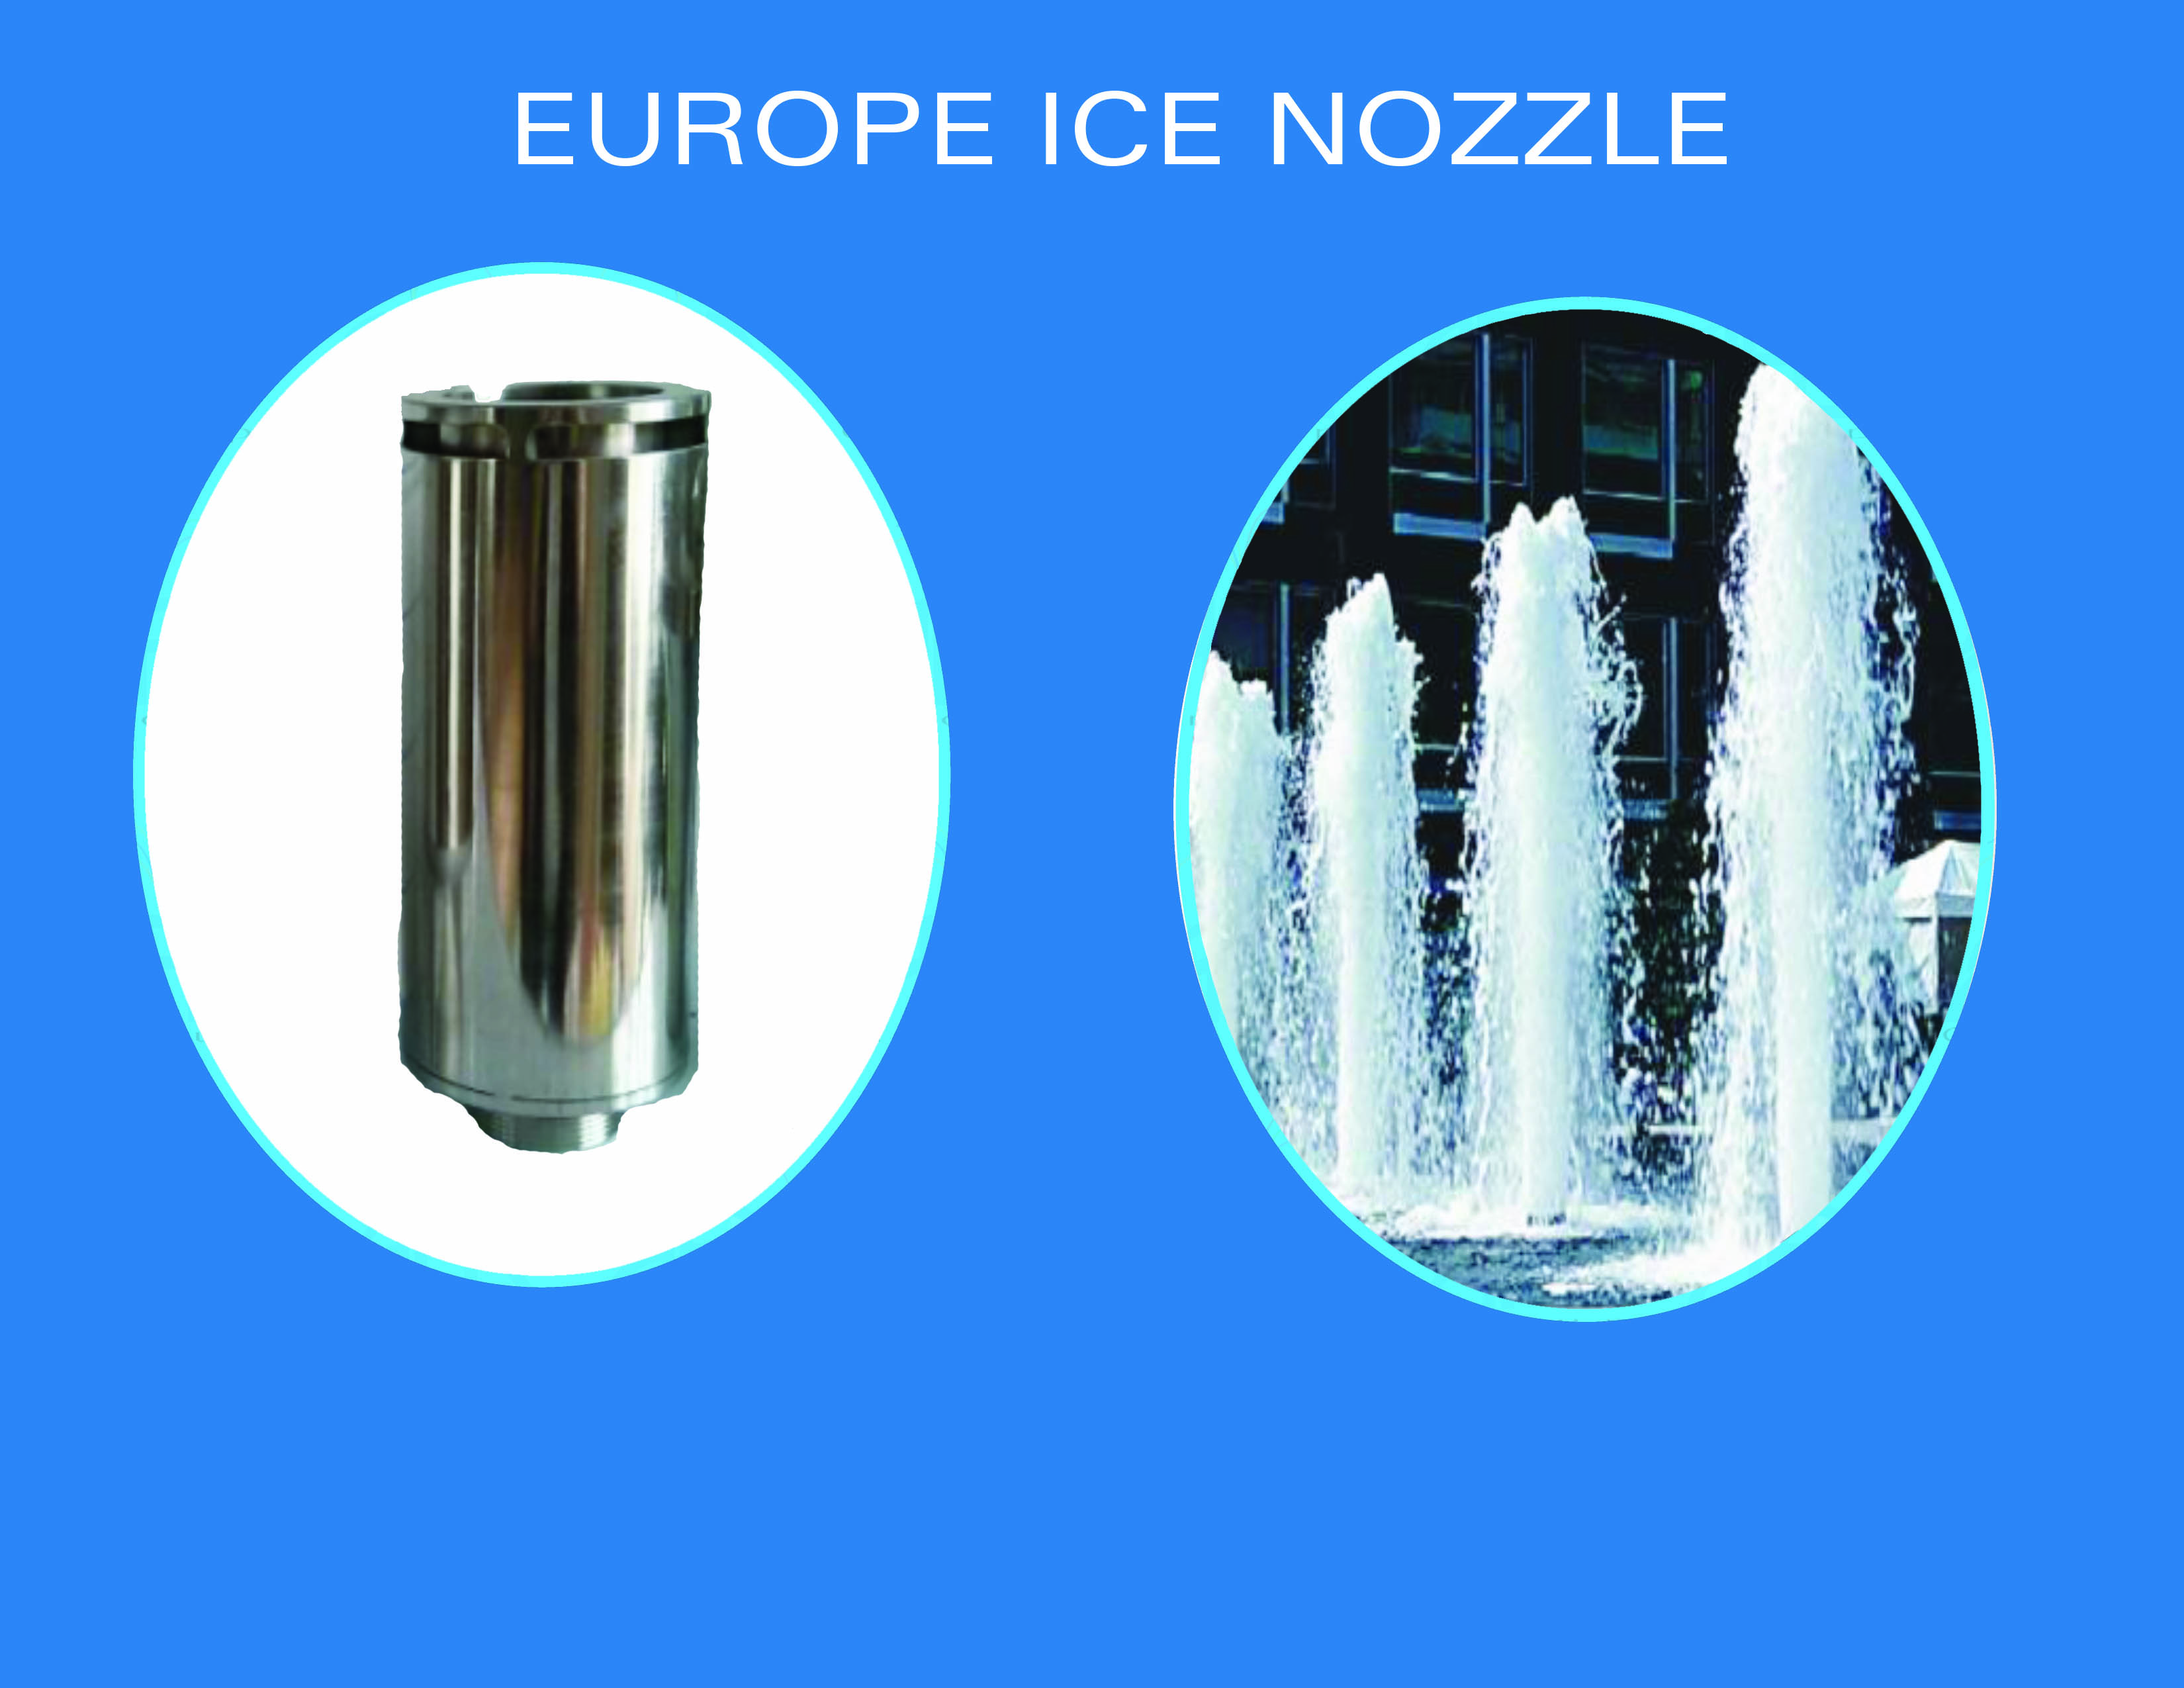 Europe ice nozzle